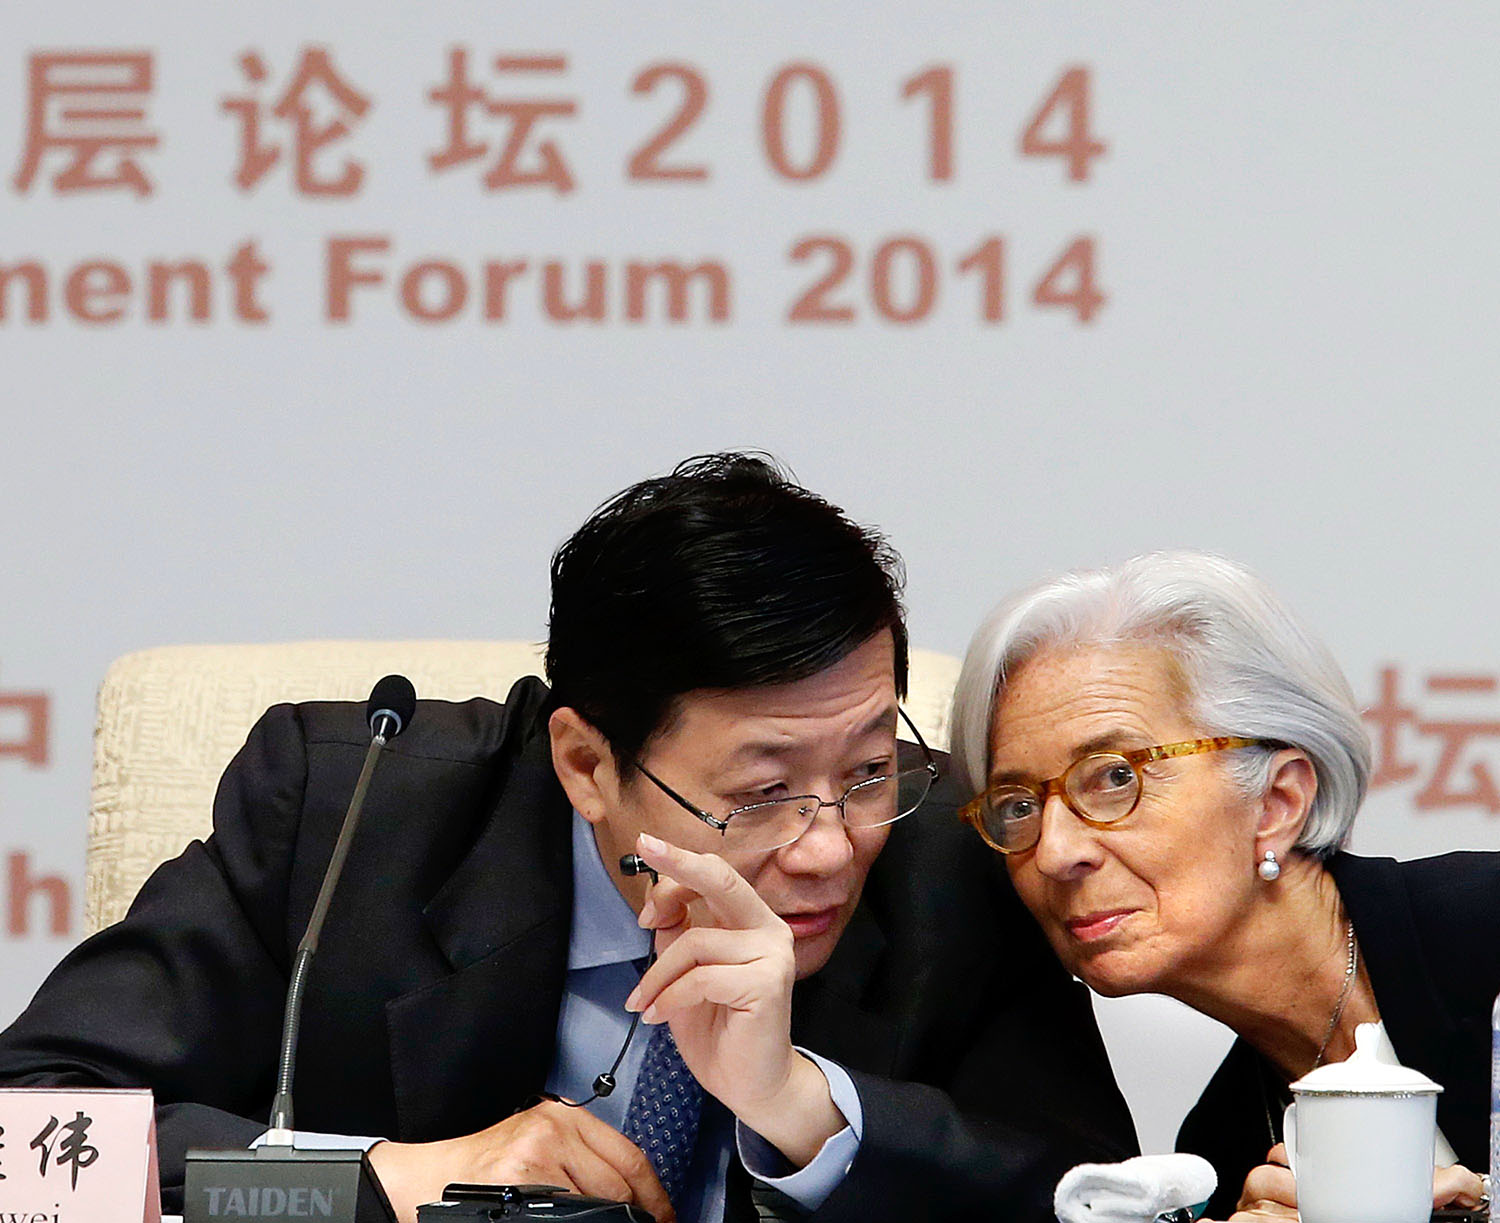 Christine Lagarde Lou Csi-vej pénzügyminiszter társaságában. Az IMF vezérét lenyűgözte, amit látott